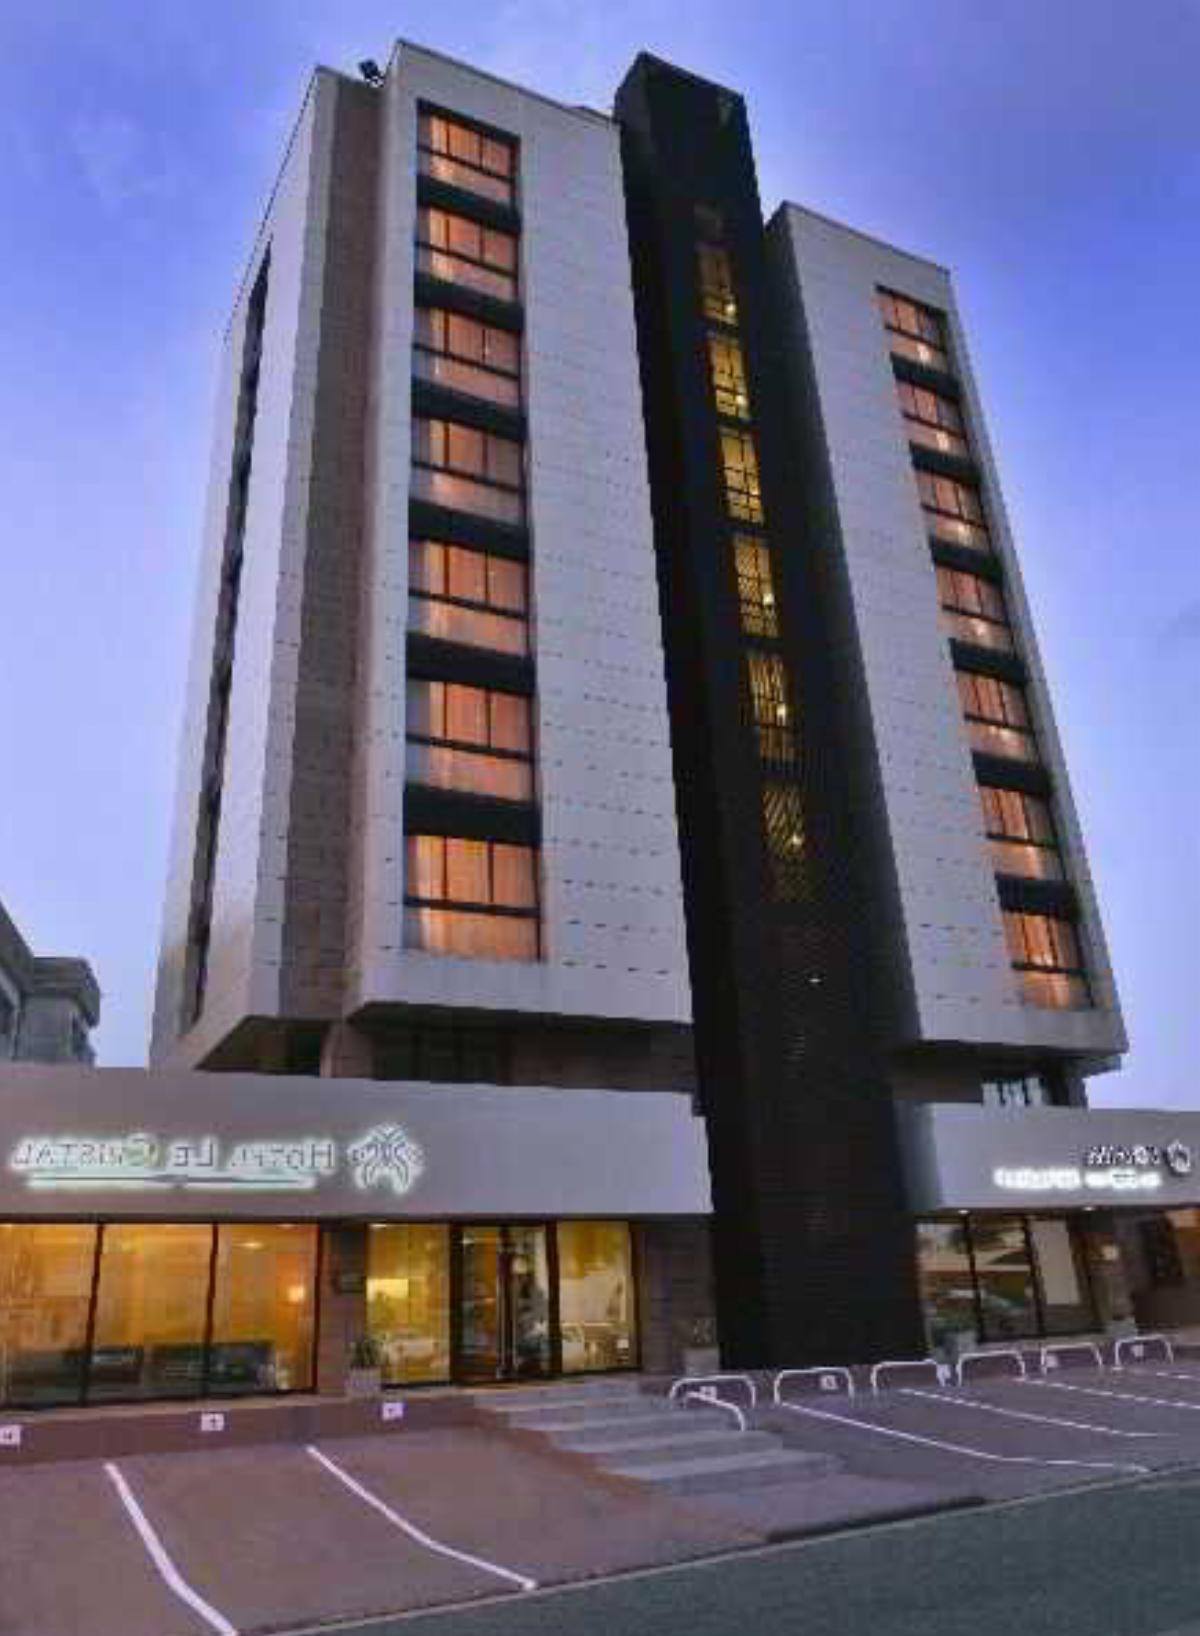 Le Crystal Hotel Hotel Libreville Gabon